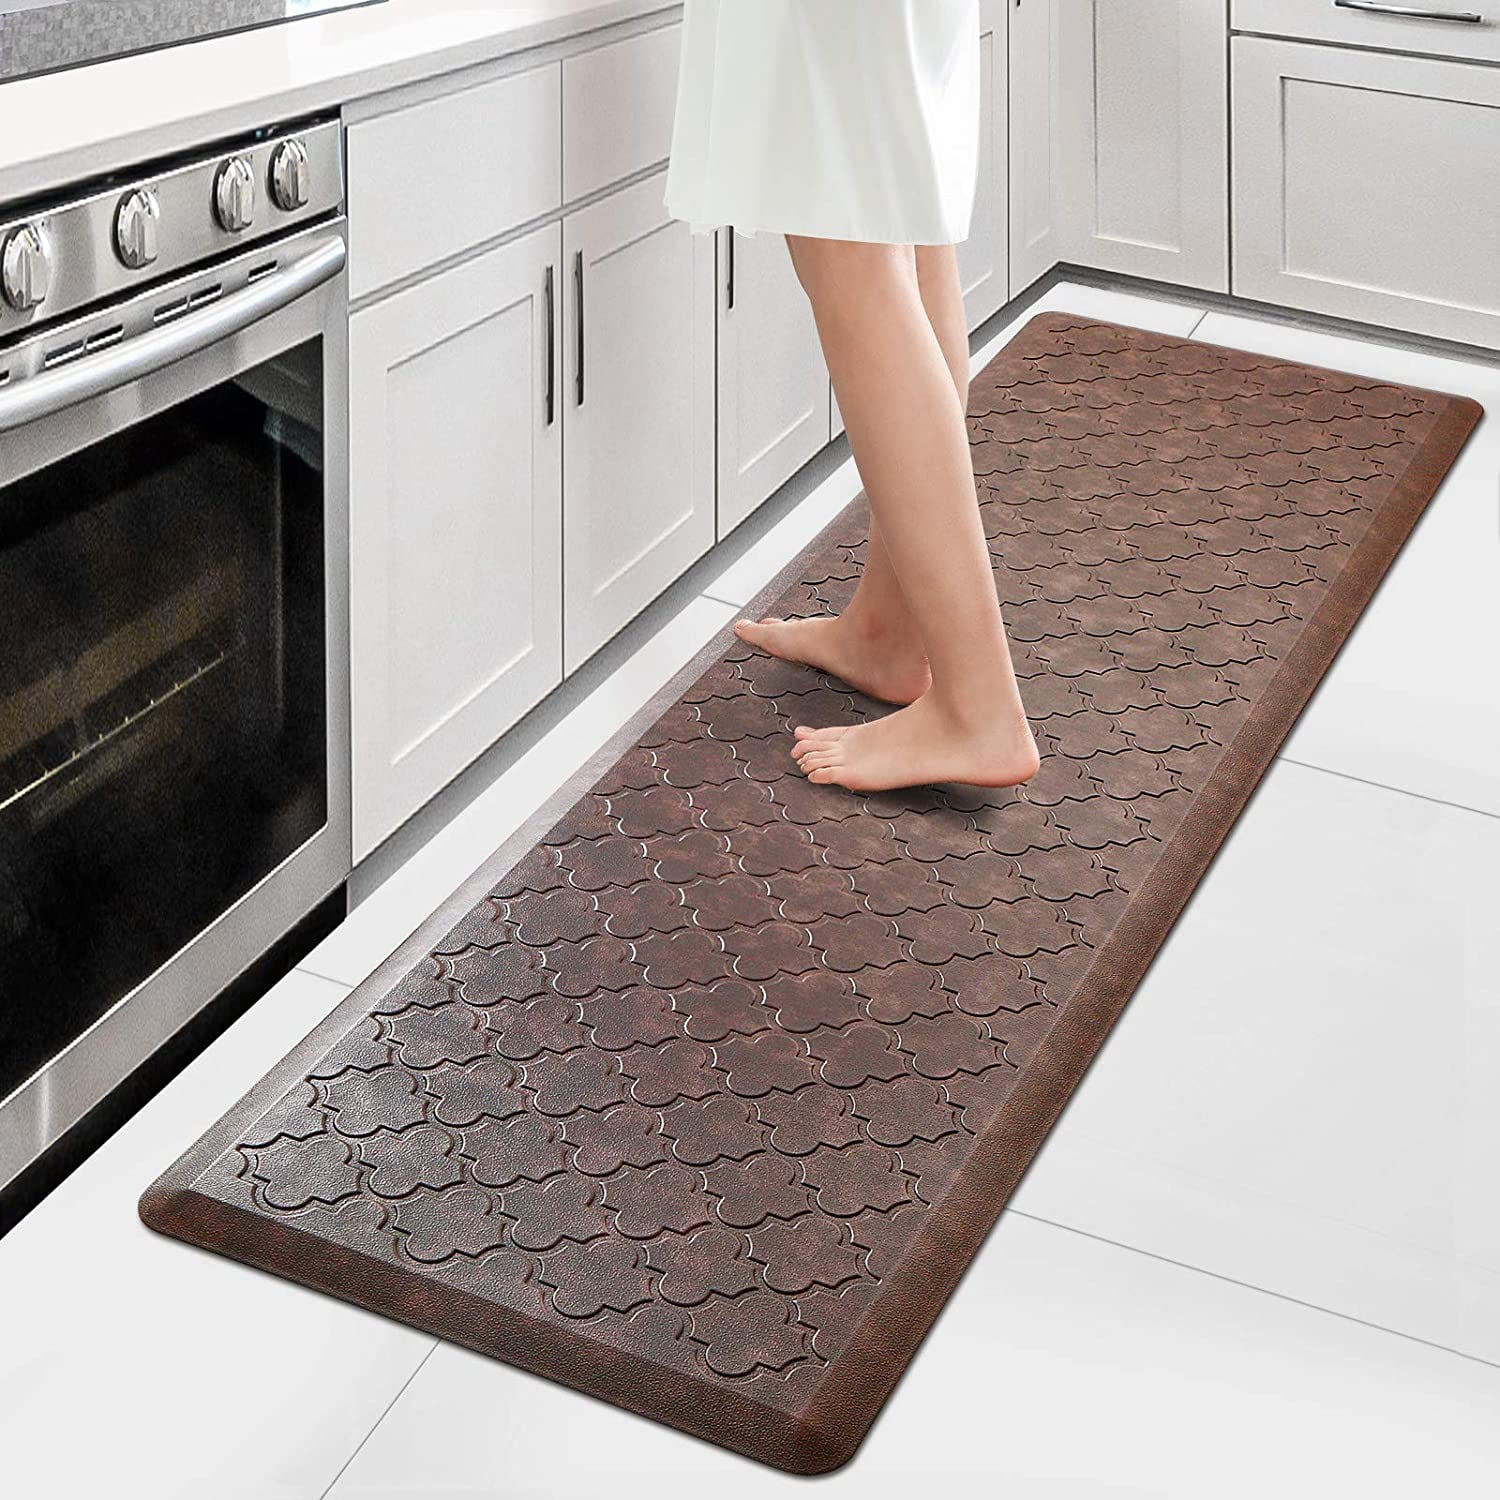 Anti-fatigue Floor Mat Ergonomic Comfort Standing Kitchen Desk Mats Waterproof 